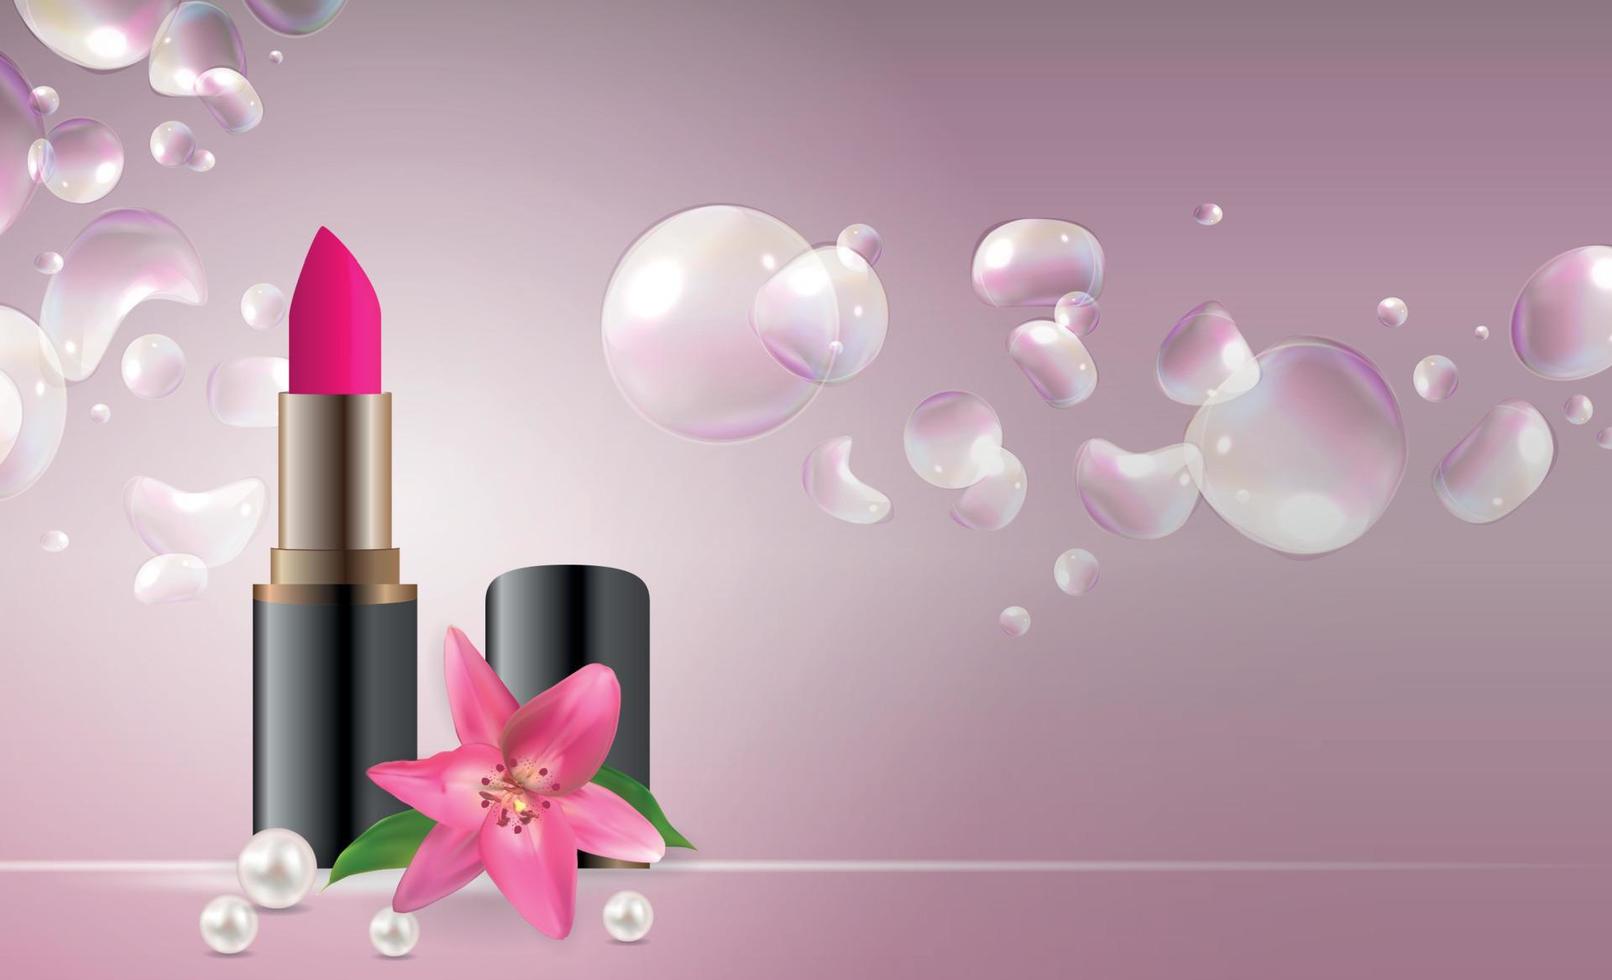 Design Kosmetikprodukt Lippenstiftvorlage für Anzeigen oder Zeitschriftenhintergrund. 3D realistische Vektorillustration vektor